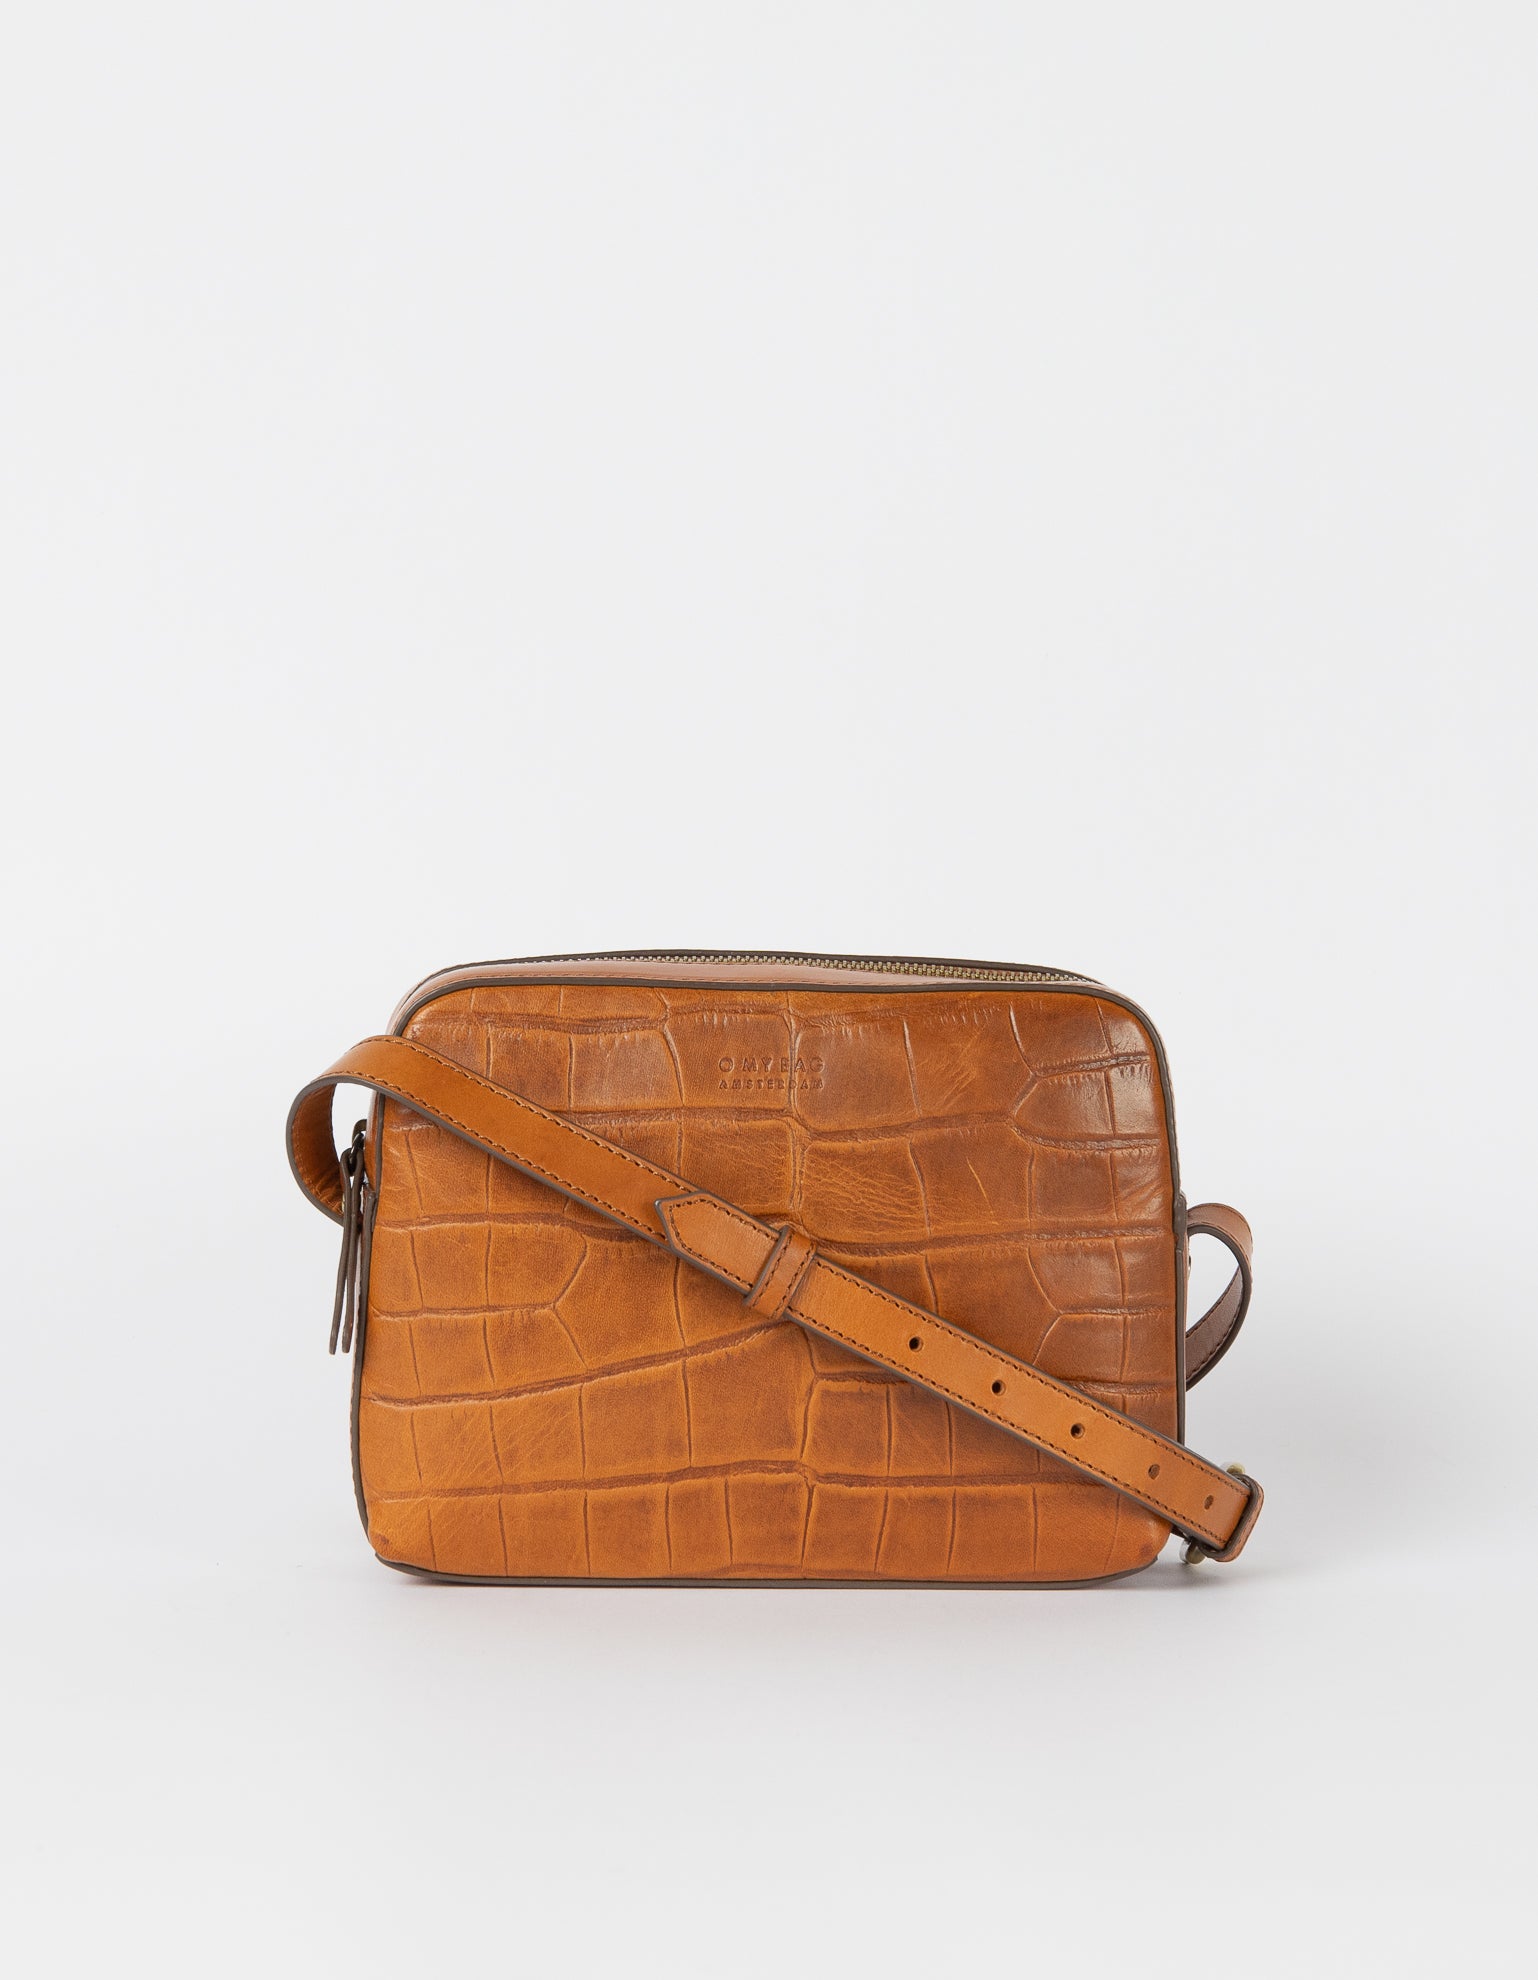 Sue Cognac Classic Croco Leather Handbag front with strap.